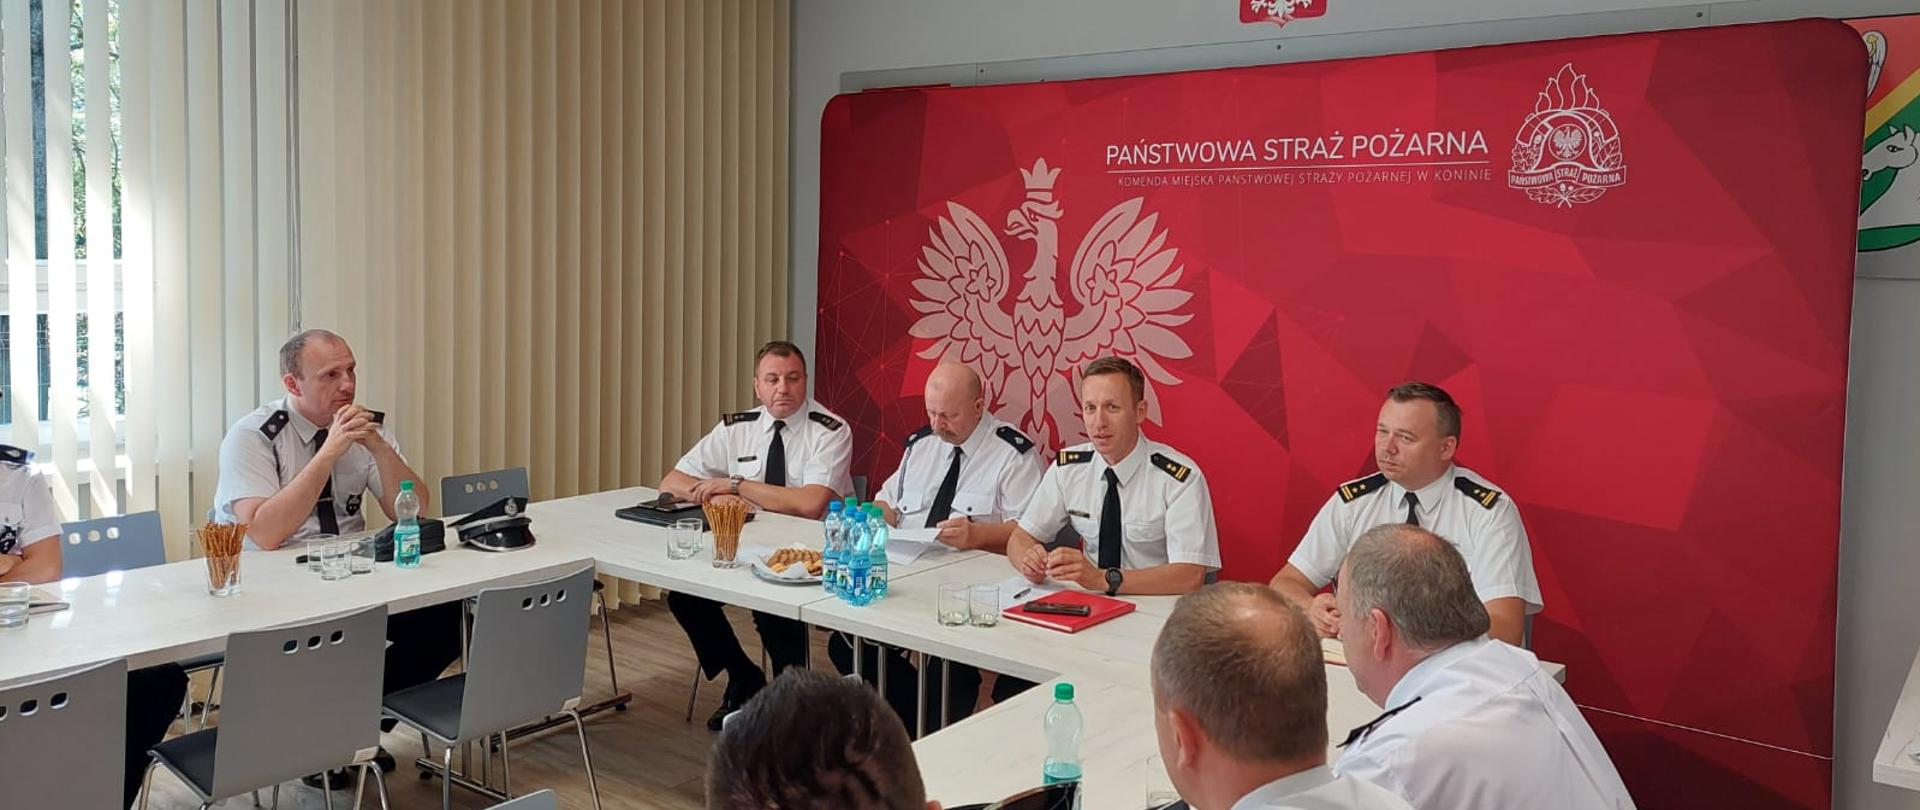 grupa strażaków w białych koszulach siedzi przy stołach, w tle duży baner z orłem